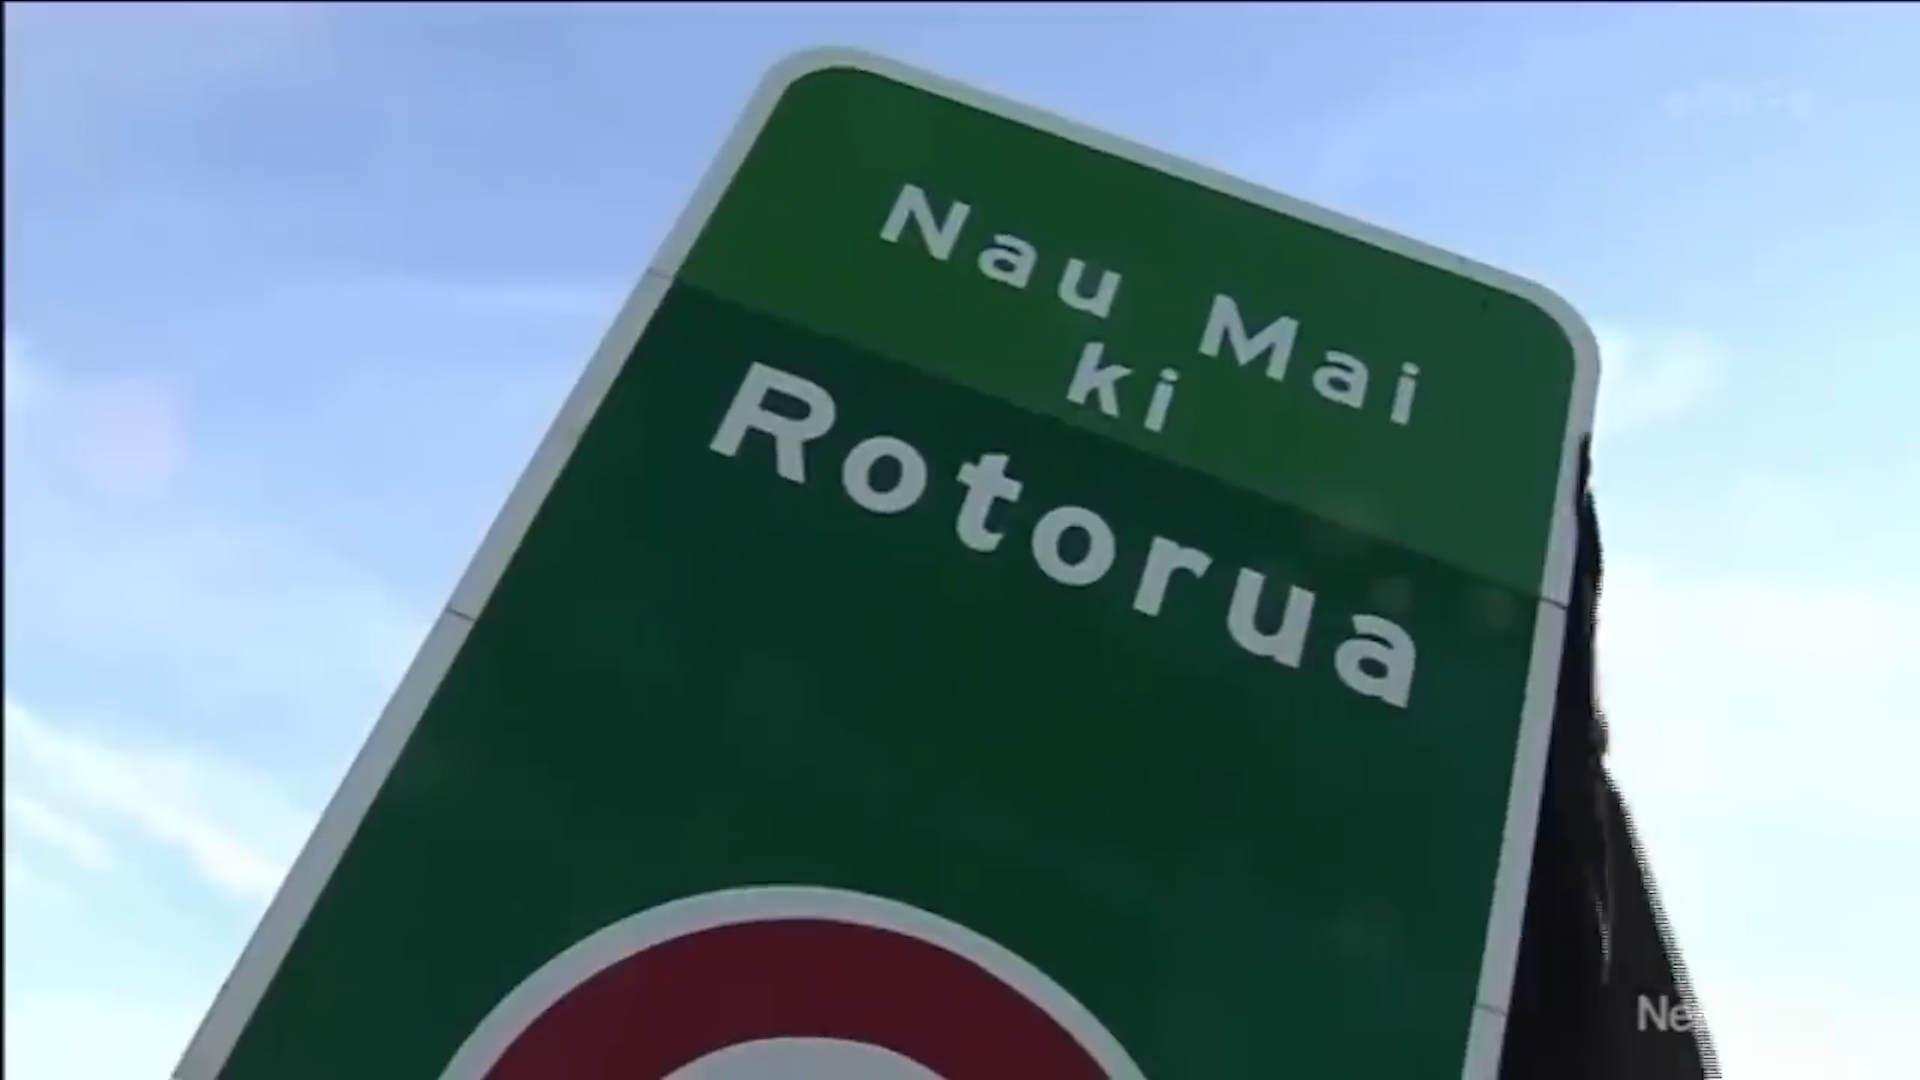 Bilingual road signs in NZ spark debate